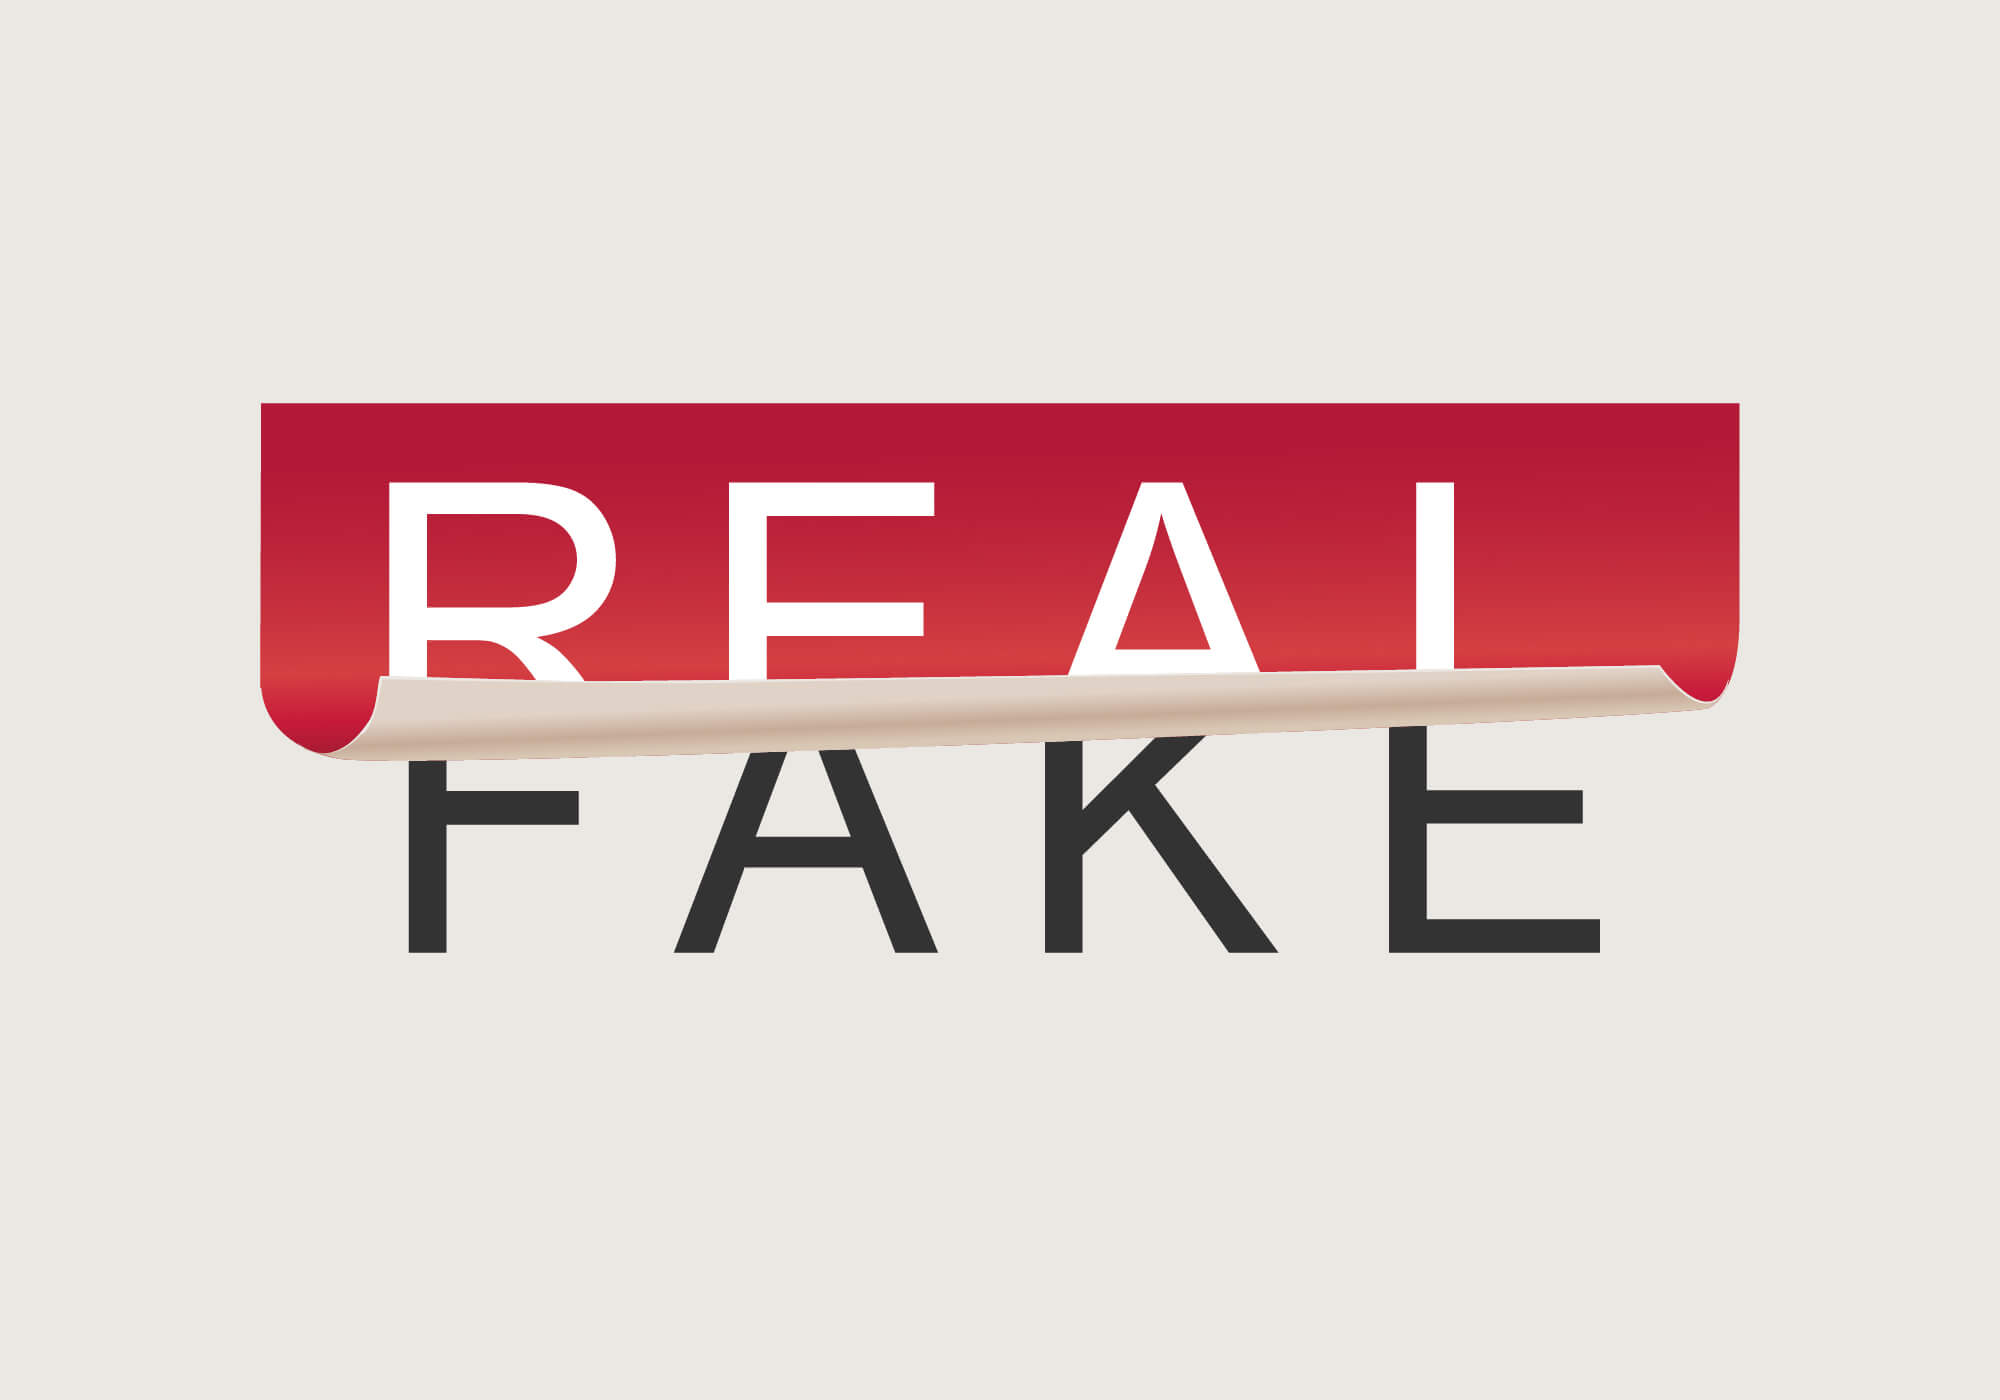 Fake News – Check Before You Forward